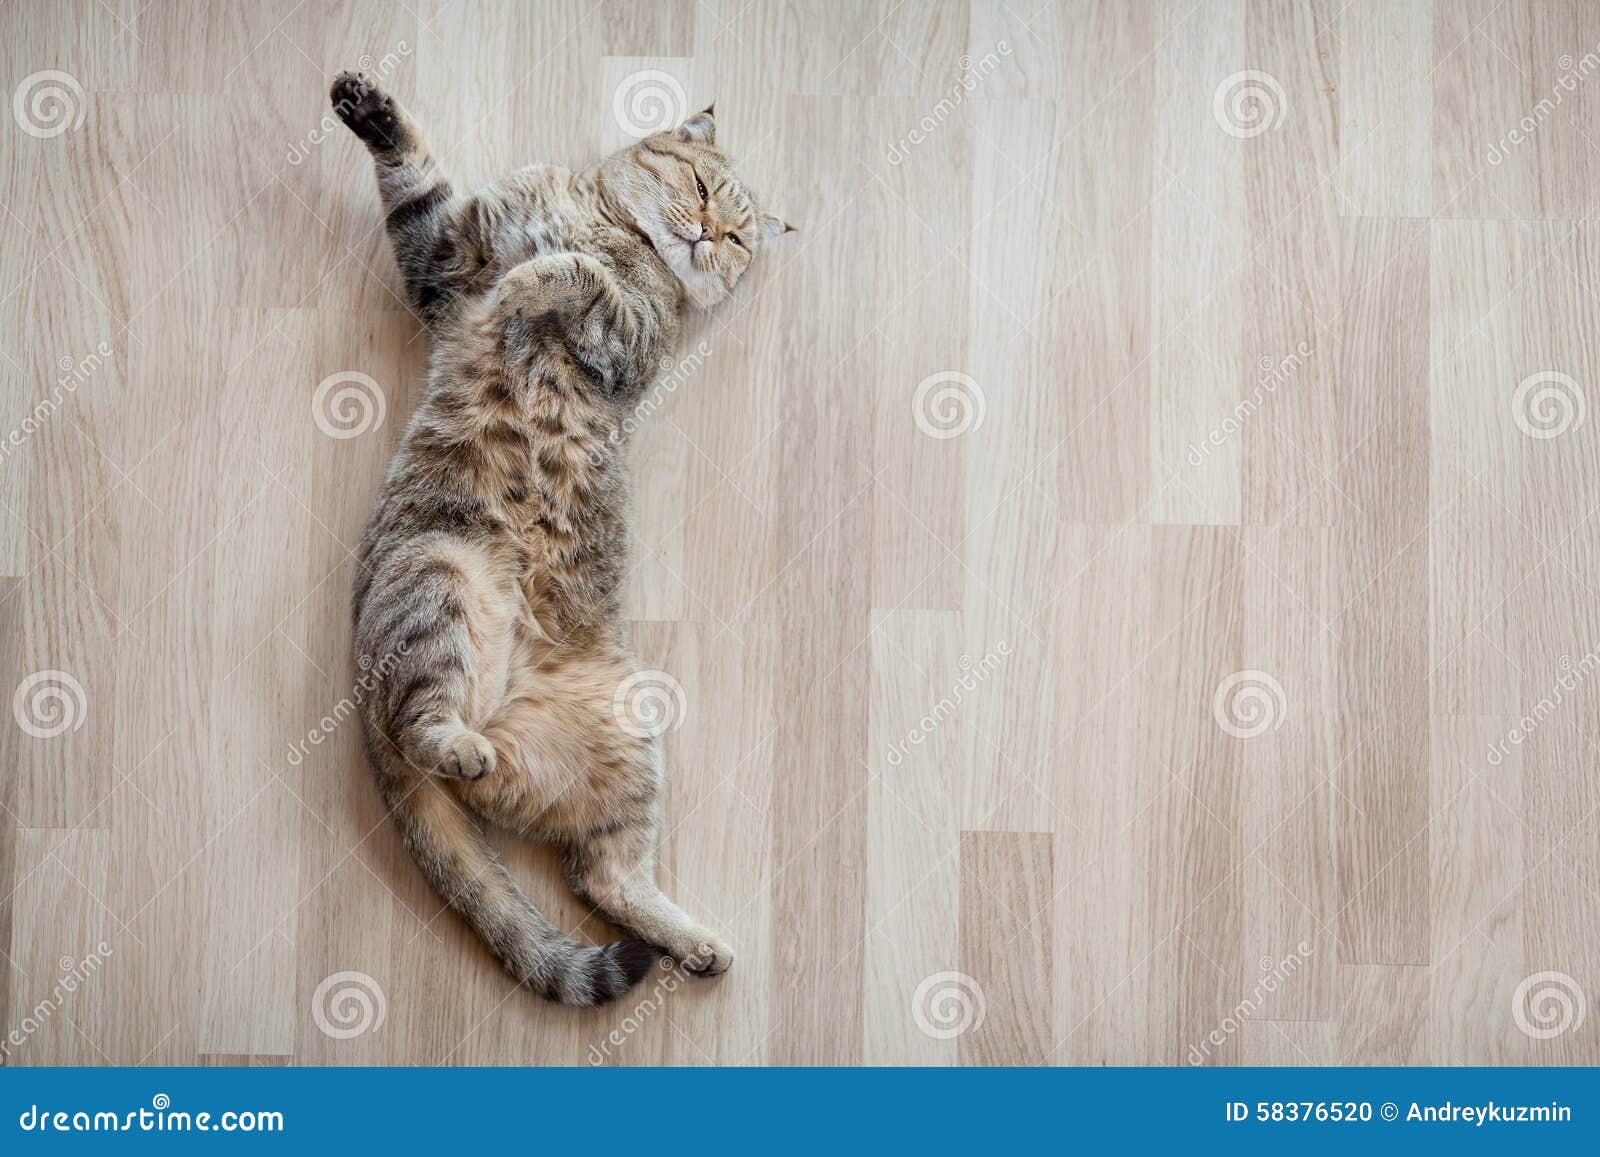 Draufsicht der Katze, die auf Parkettboden liegt. Erwachsene Katze, die zu Hause auf Parkettboden liegt